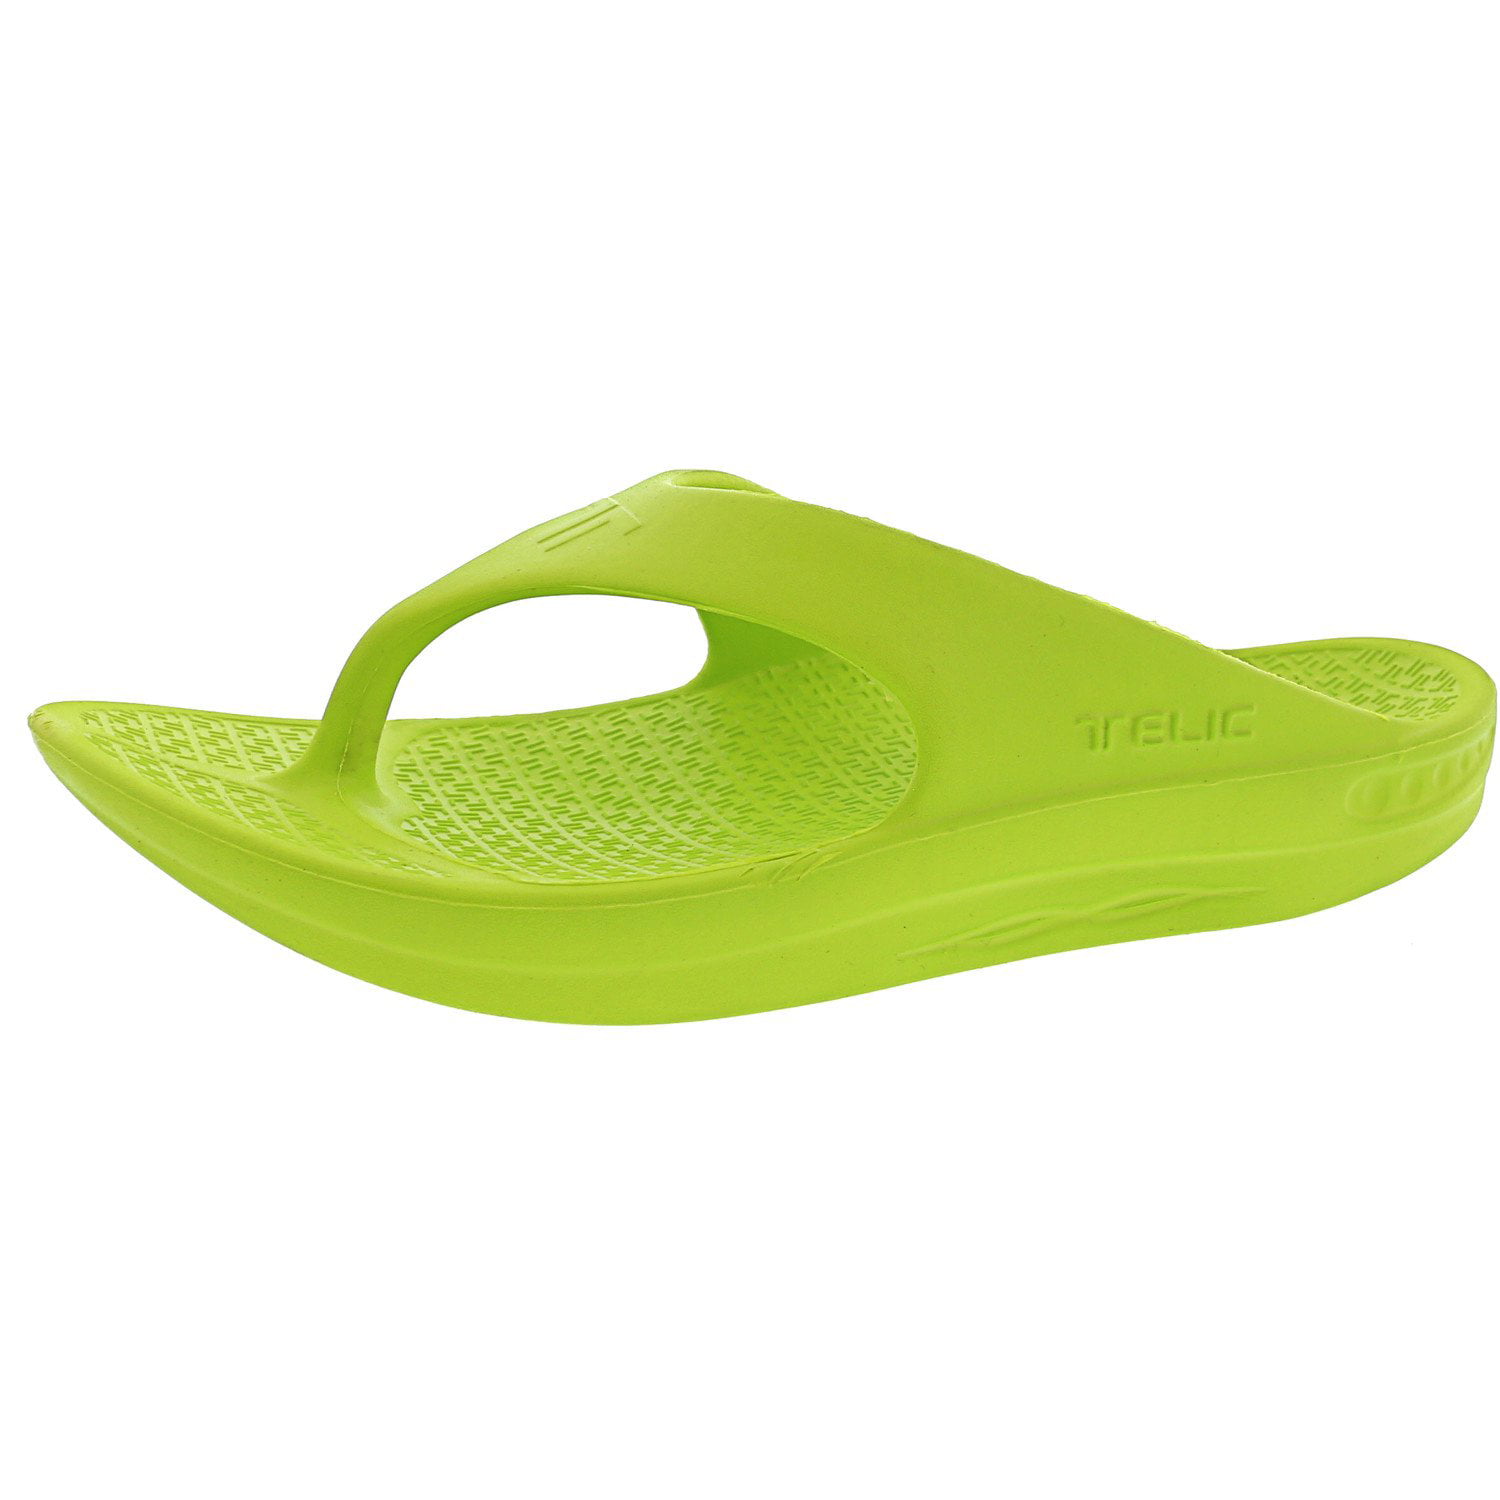 Flip Flop Key Lime Slip-On Shoes - 6M 